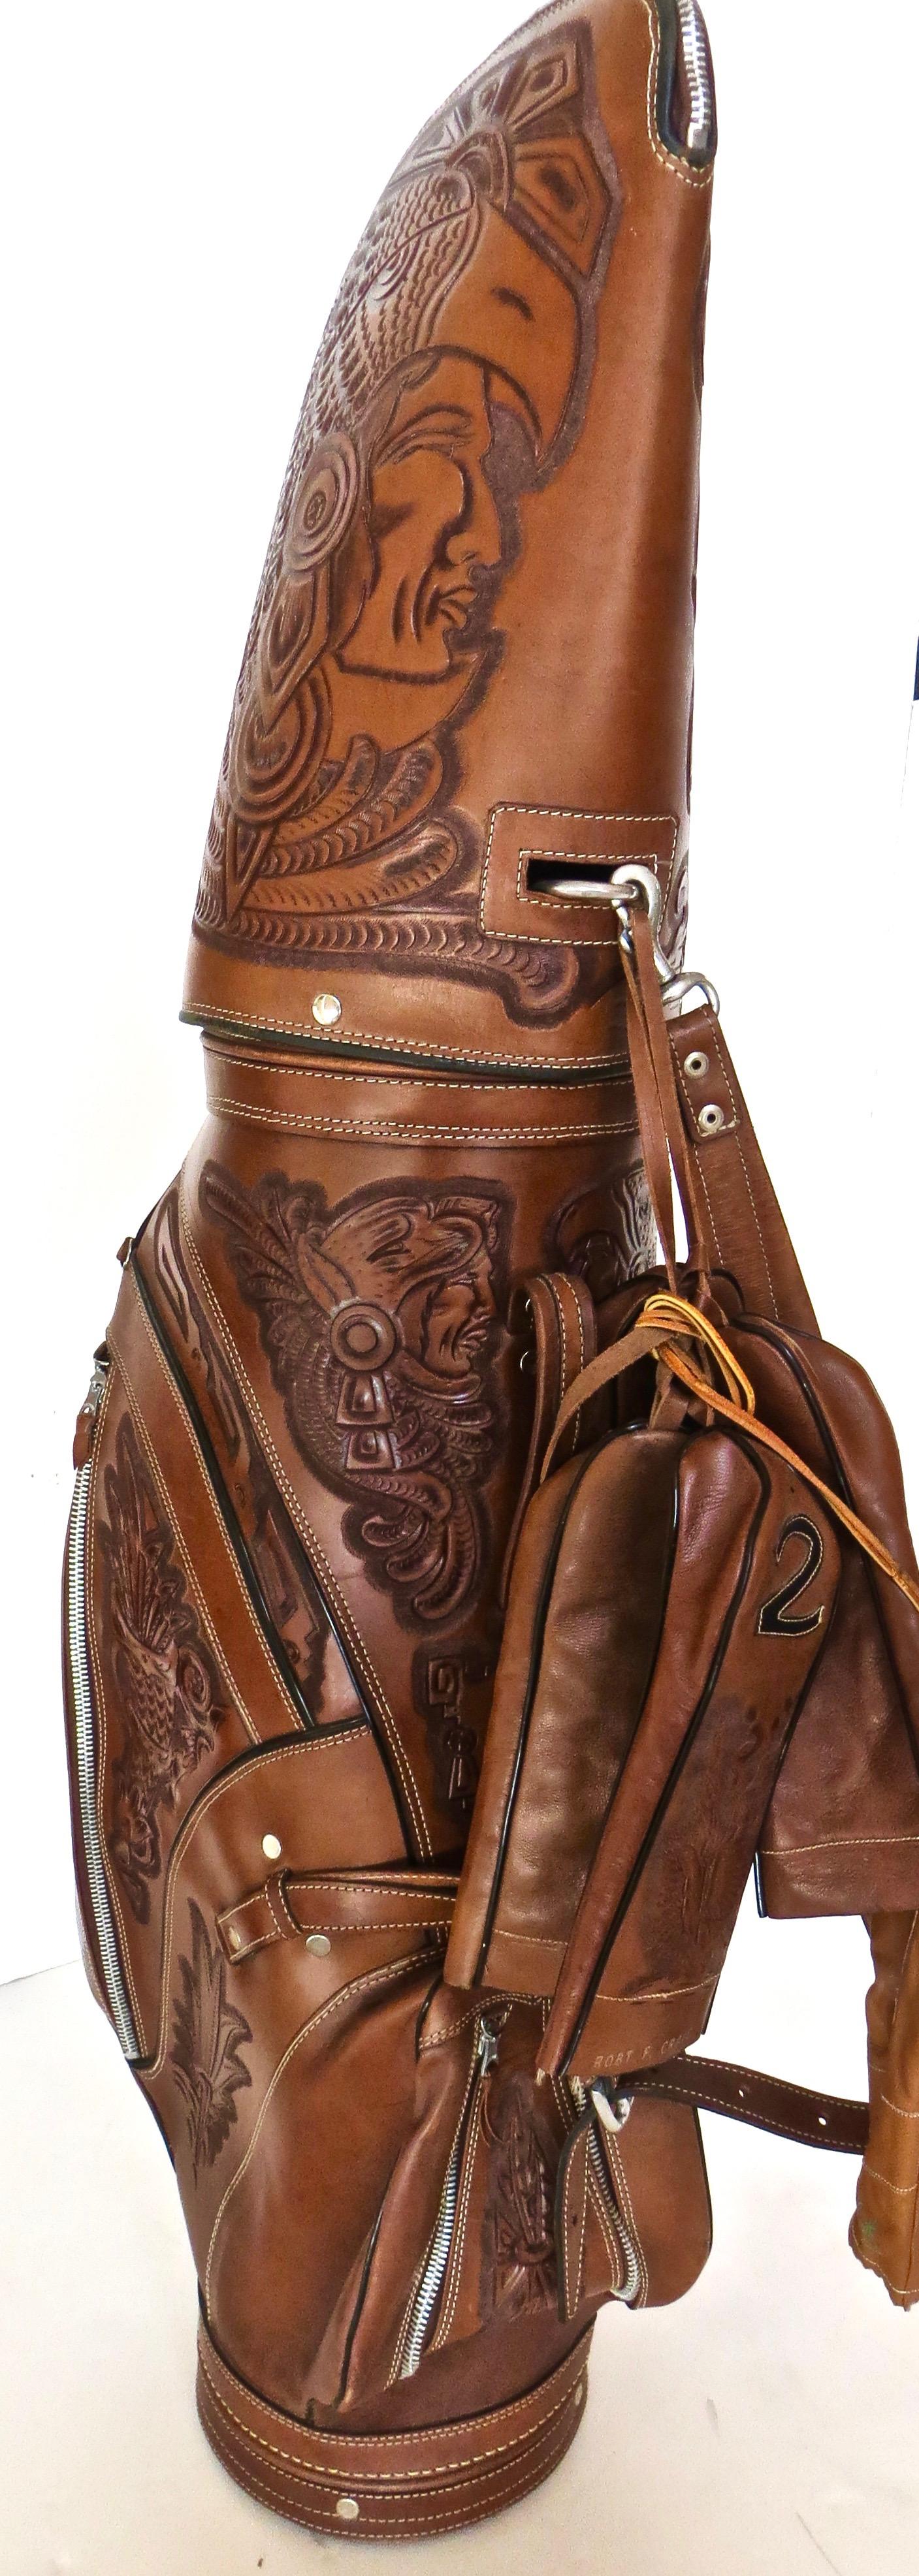 western golf bag